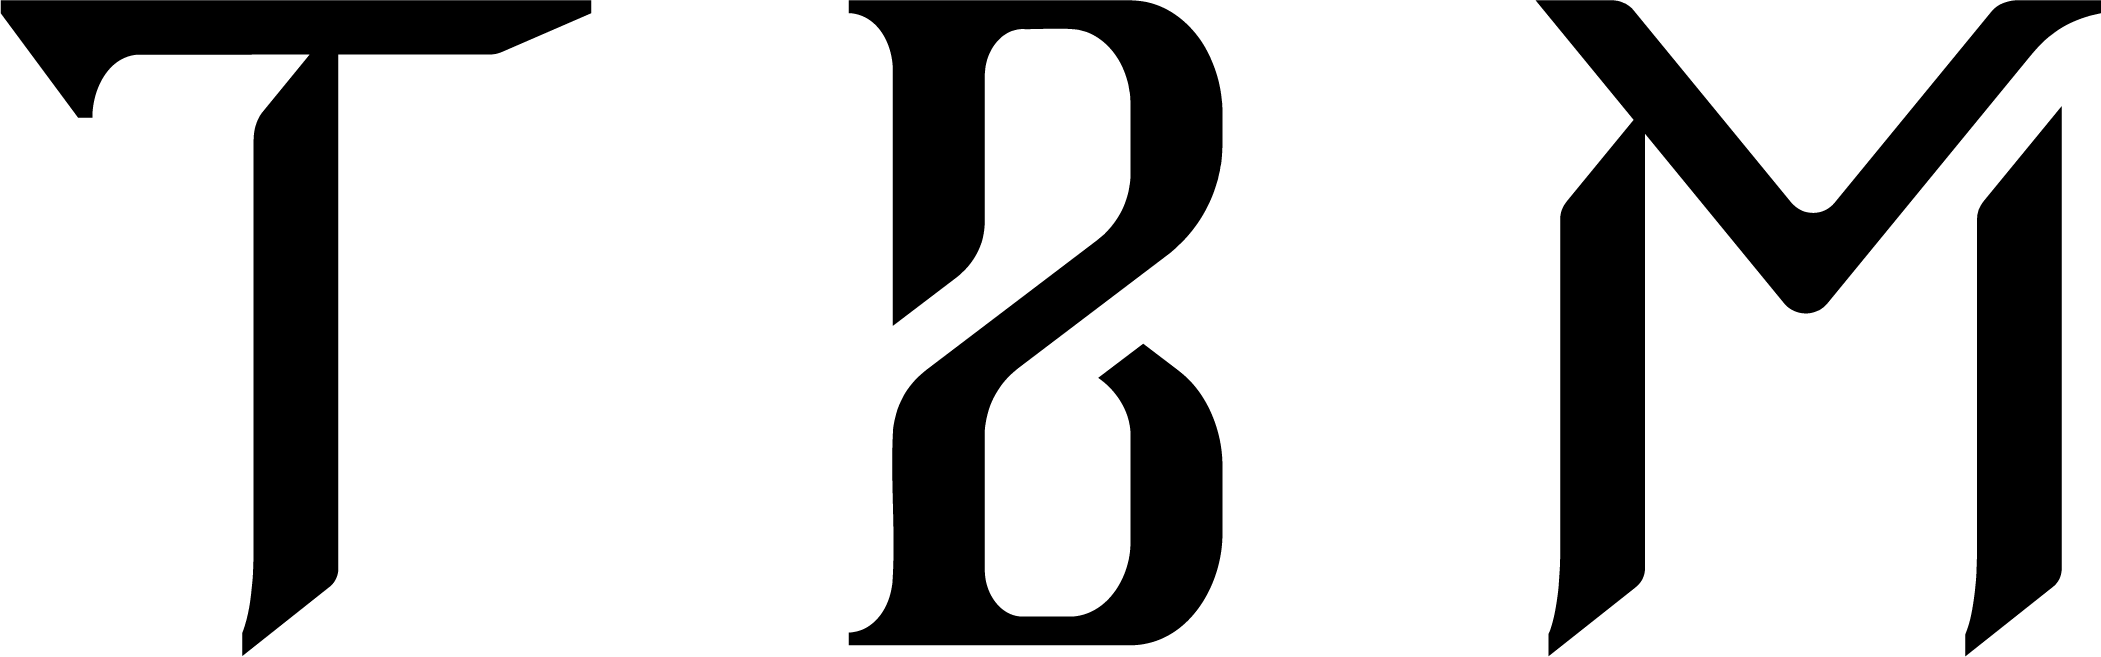 TBM logo